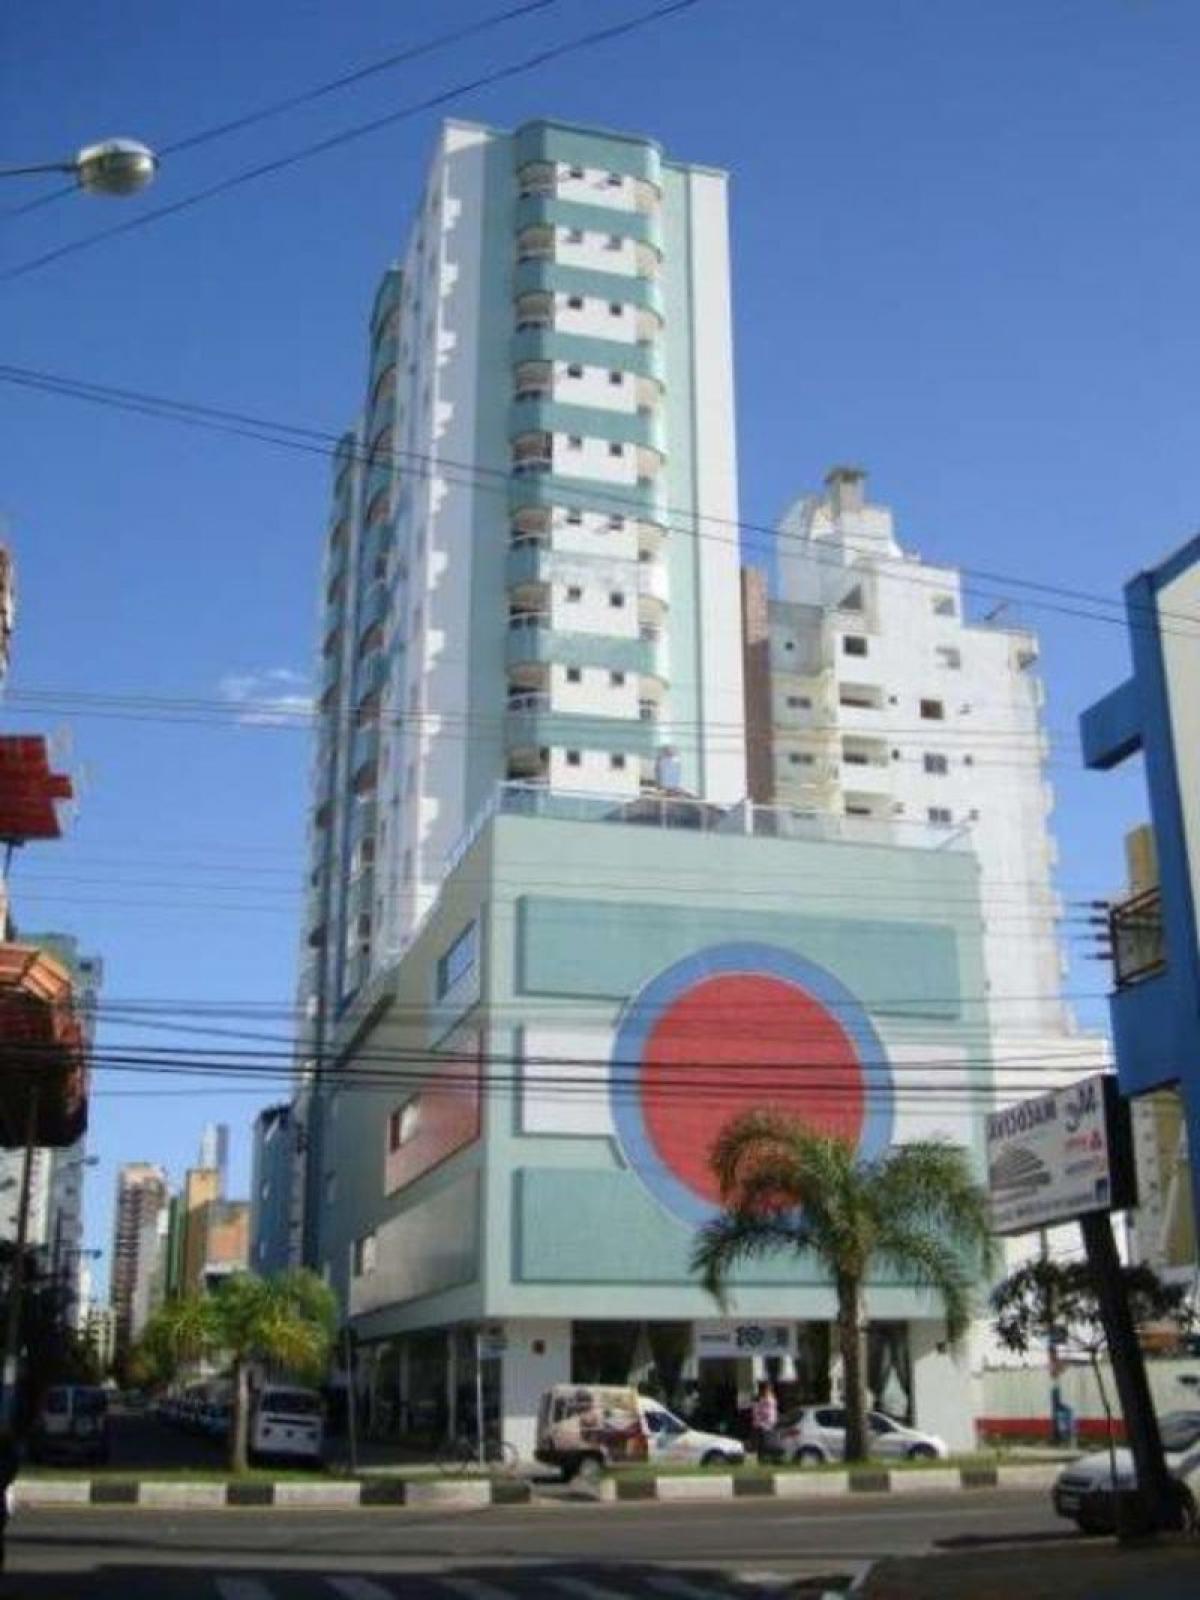 Picture of Apartment For Sale in Balneario Camboriu, Santa Catarina, Brazil